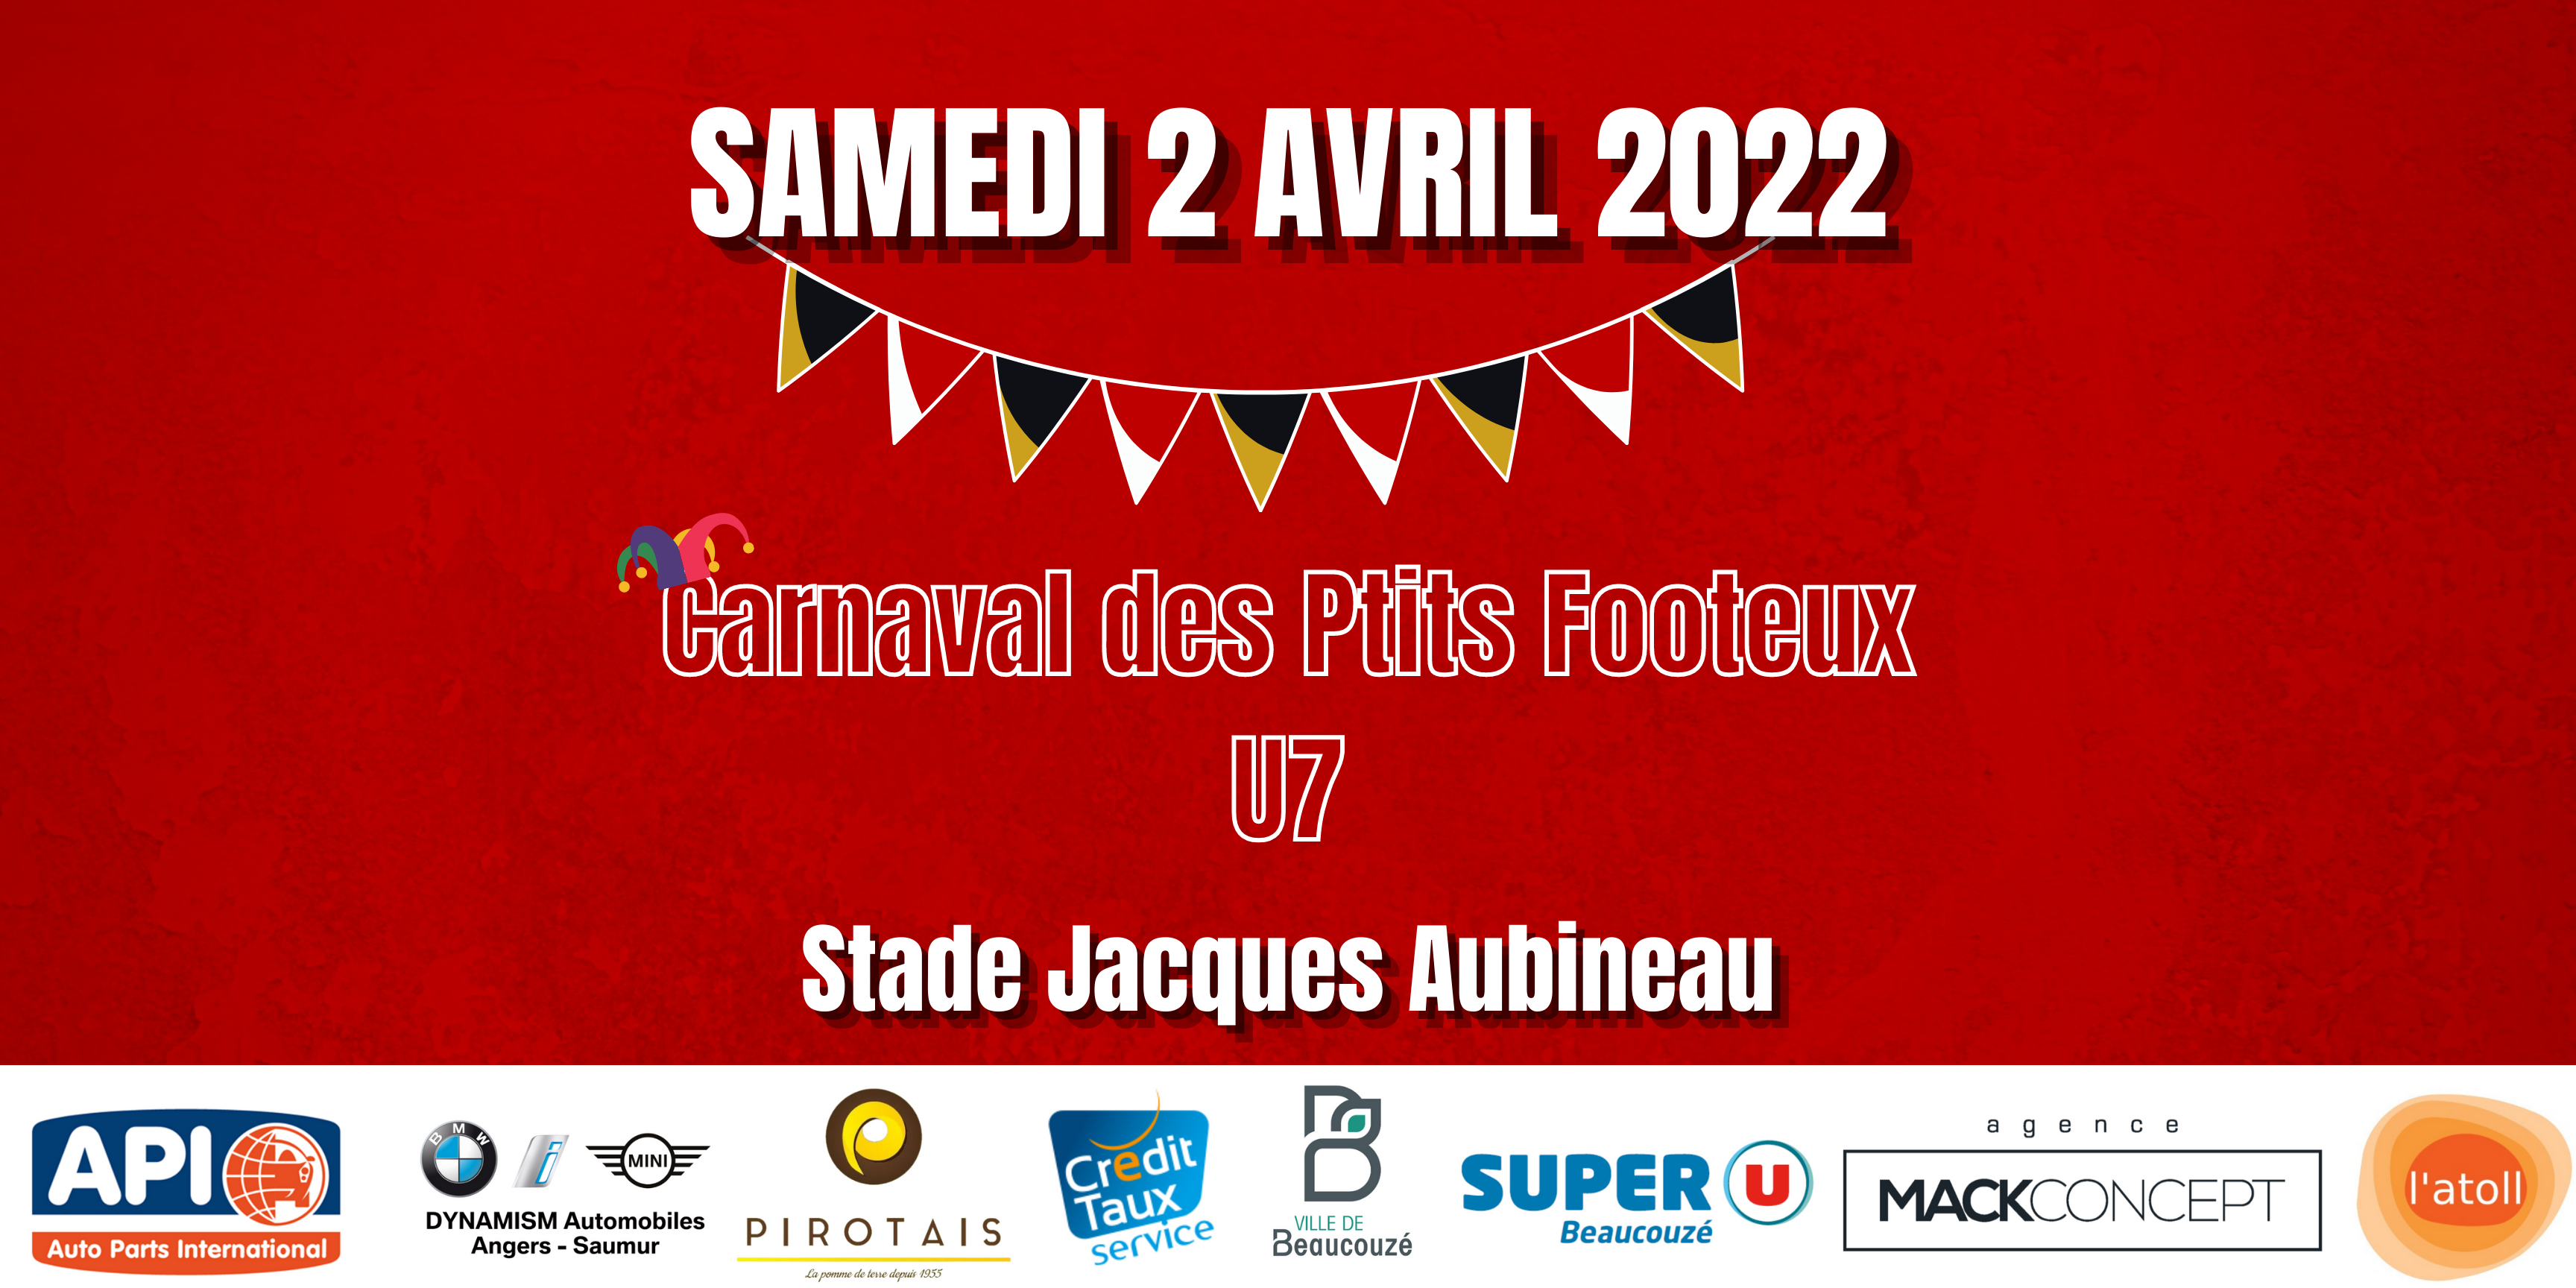 Carnaval des Ptits Footeux à Beaucouzé ce samedi 2 avril 2022 !